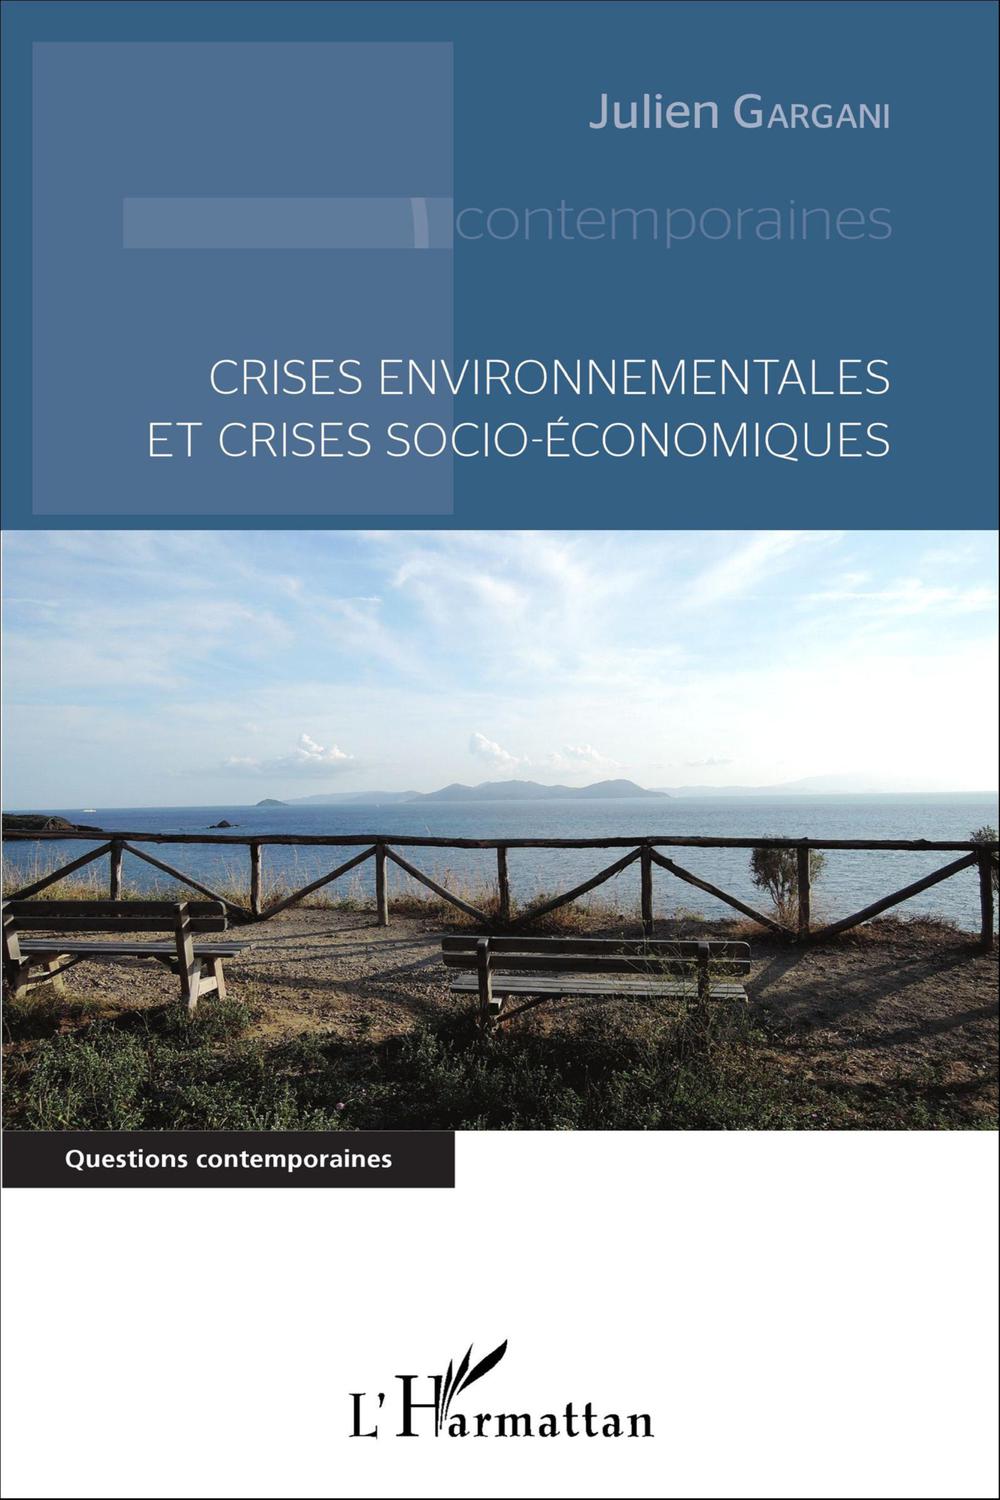 Crises environnementales et crises socio-économiques - Julien Gargani